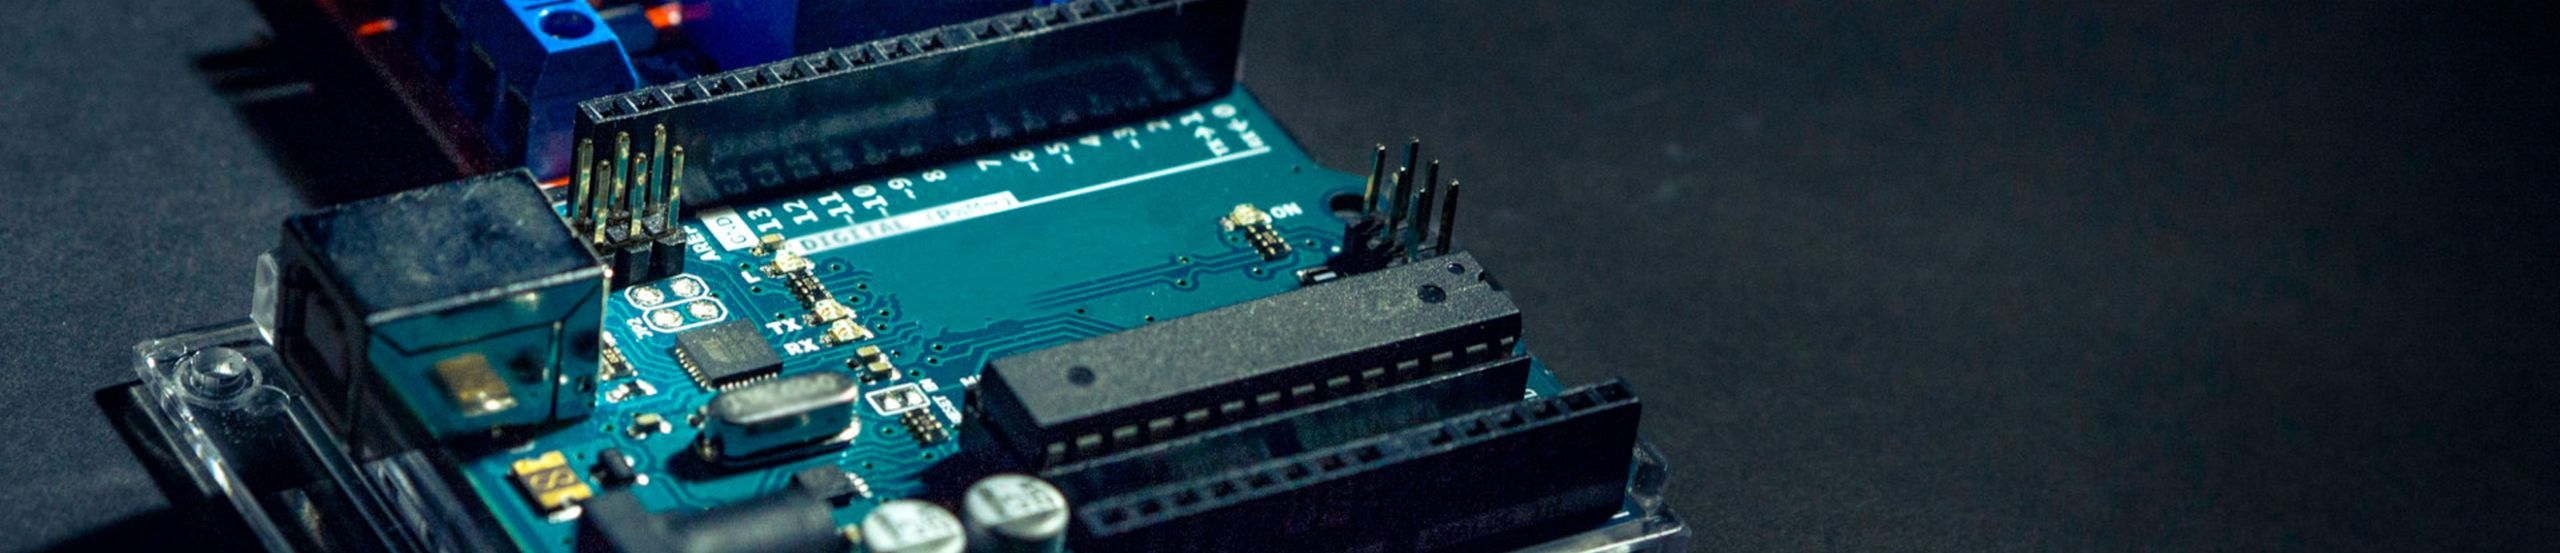 Mikrocontroller-Board Arduino Uno mit zusätzlichem Relais-Modul.